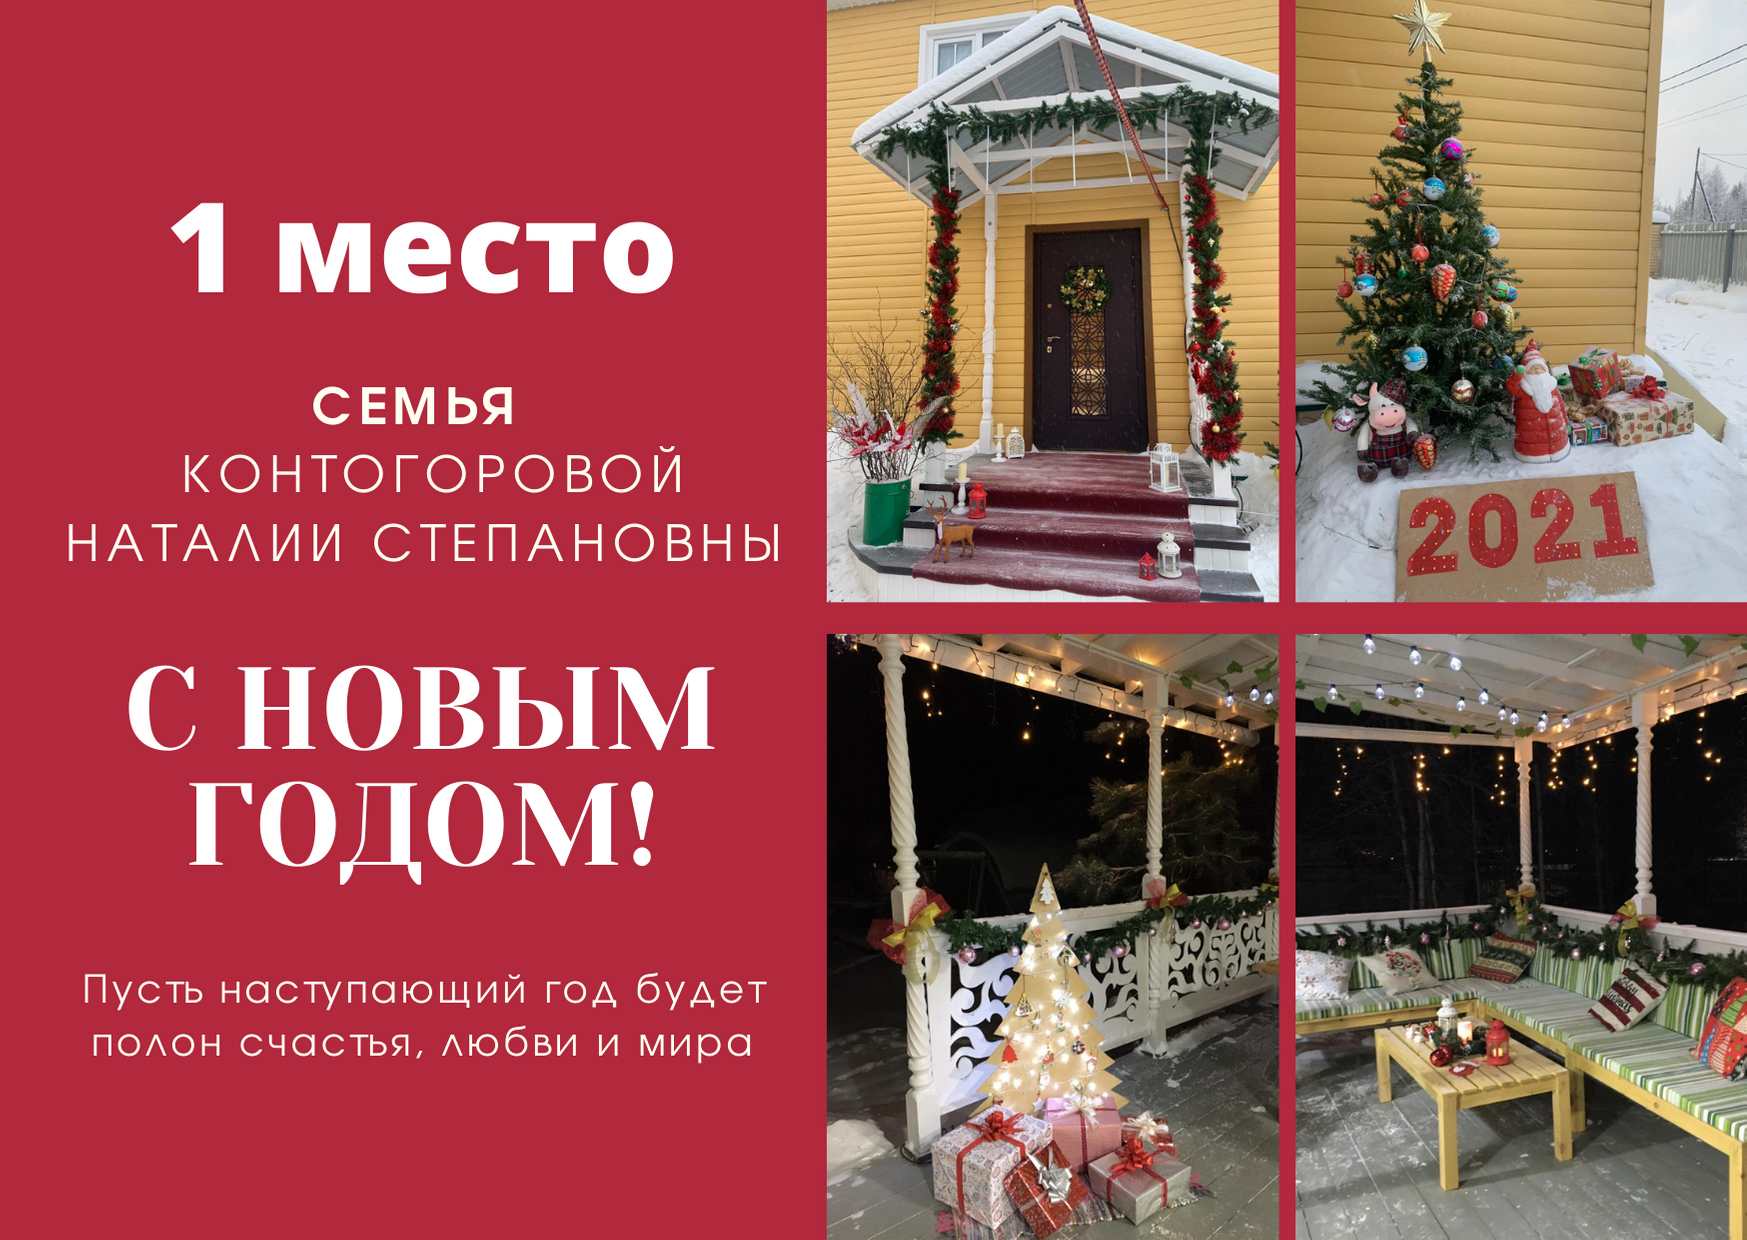 С 4 по 23 декабря 2020 года впервые среди жителей Мирного проводился конкурс на лучшую дворовую новогоднюю красавицу-ель.